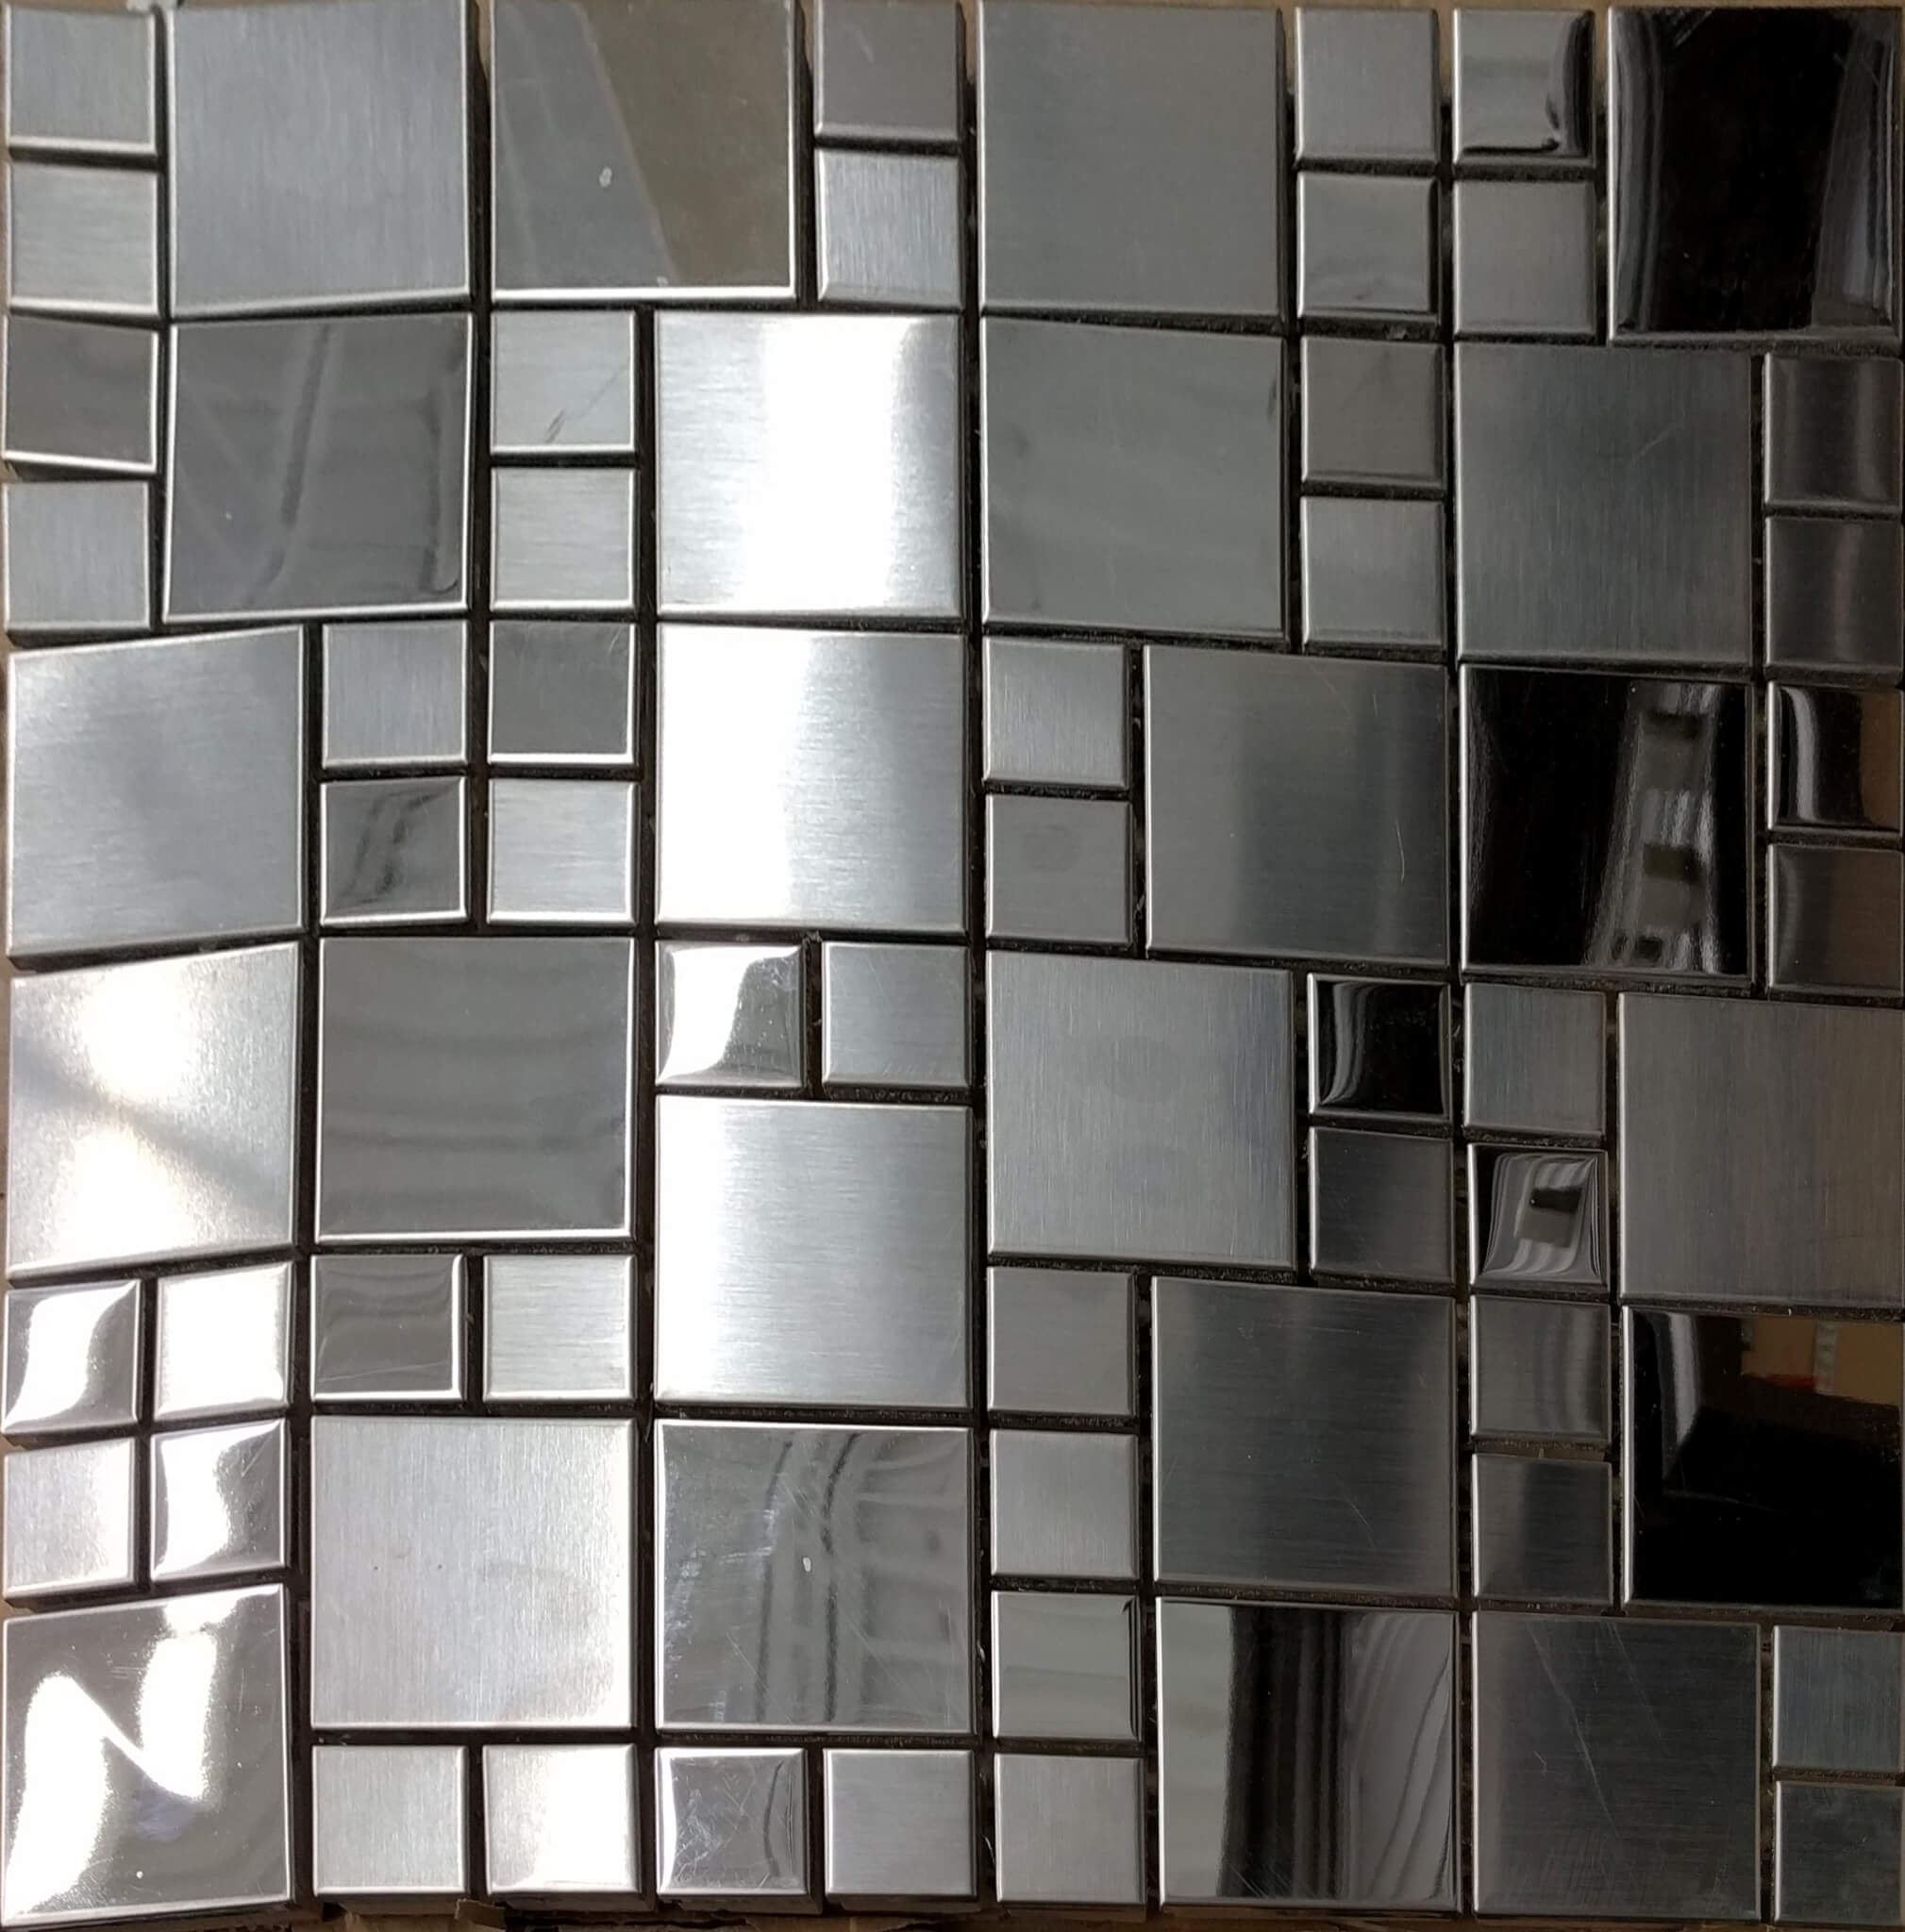 Stainless Steel Tile Hs091, Stainless Steel Tiles Backsplash